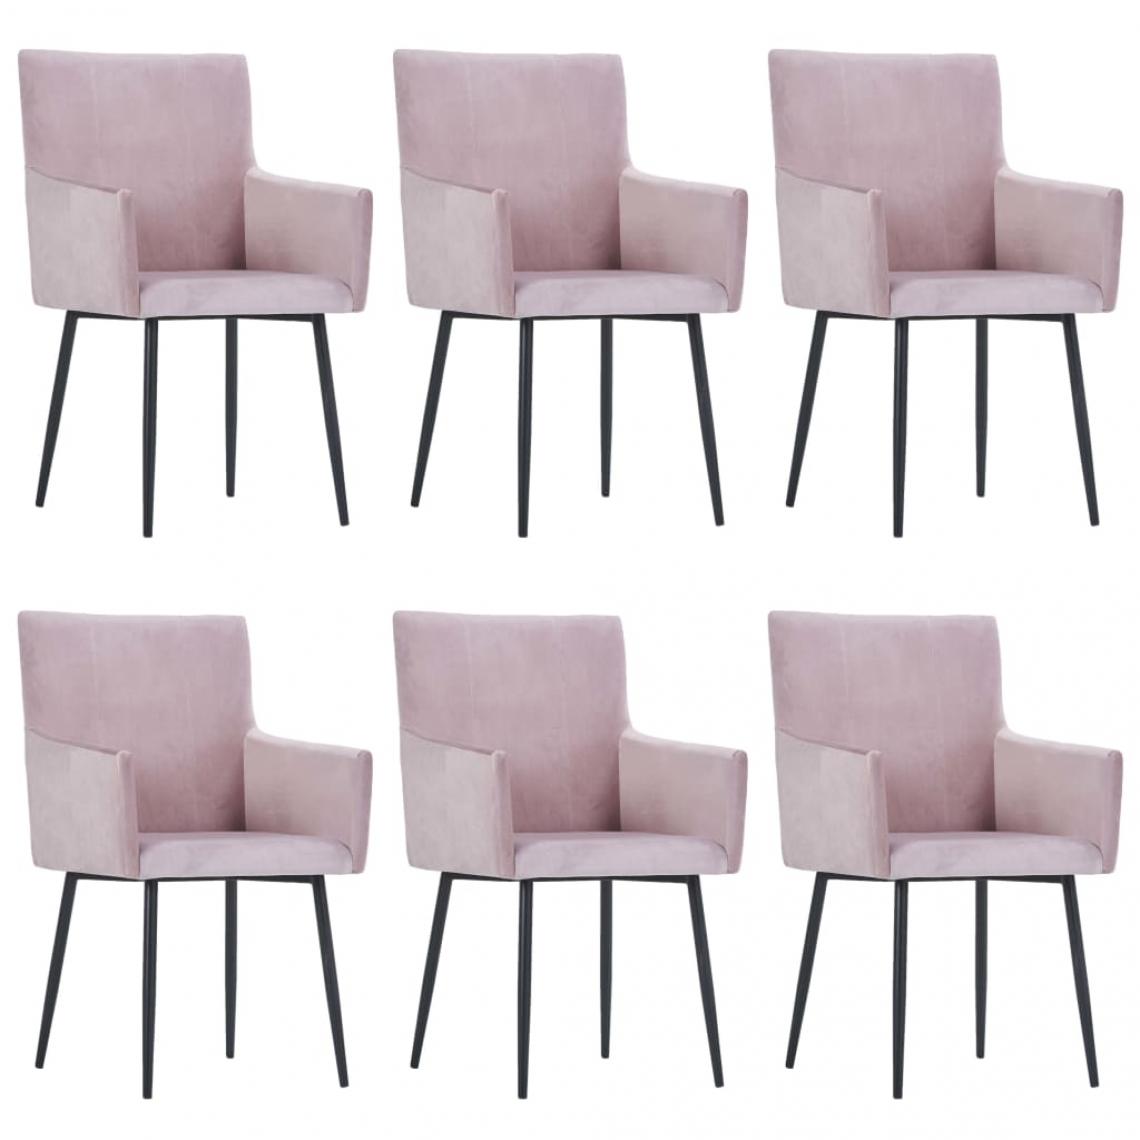 Decoshop26 - Lot de 6 chaises de salle à manger cuisine avec accoudoirs design moderne velours rose CDS022138 - Chaises